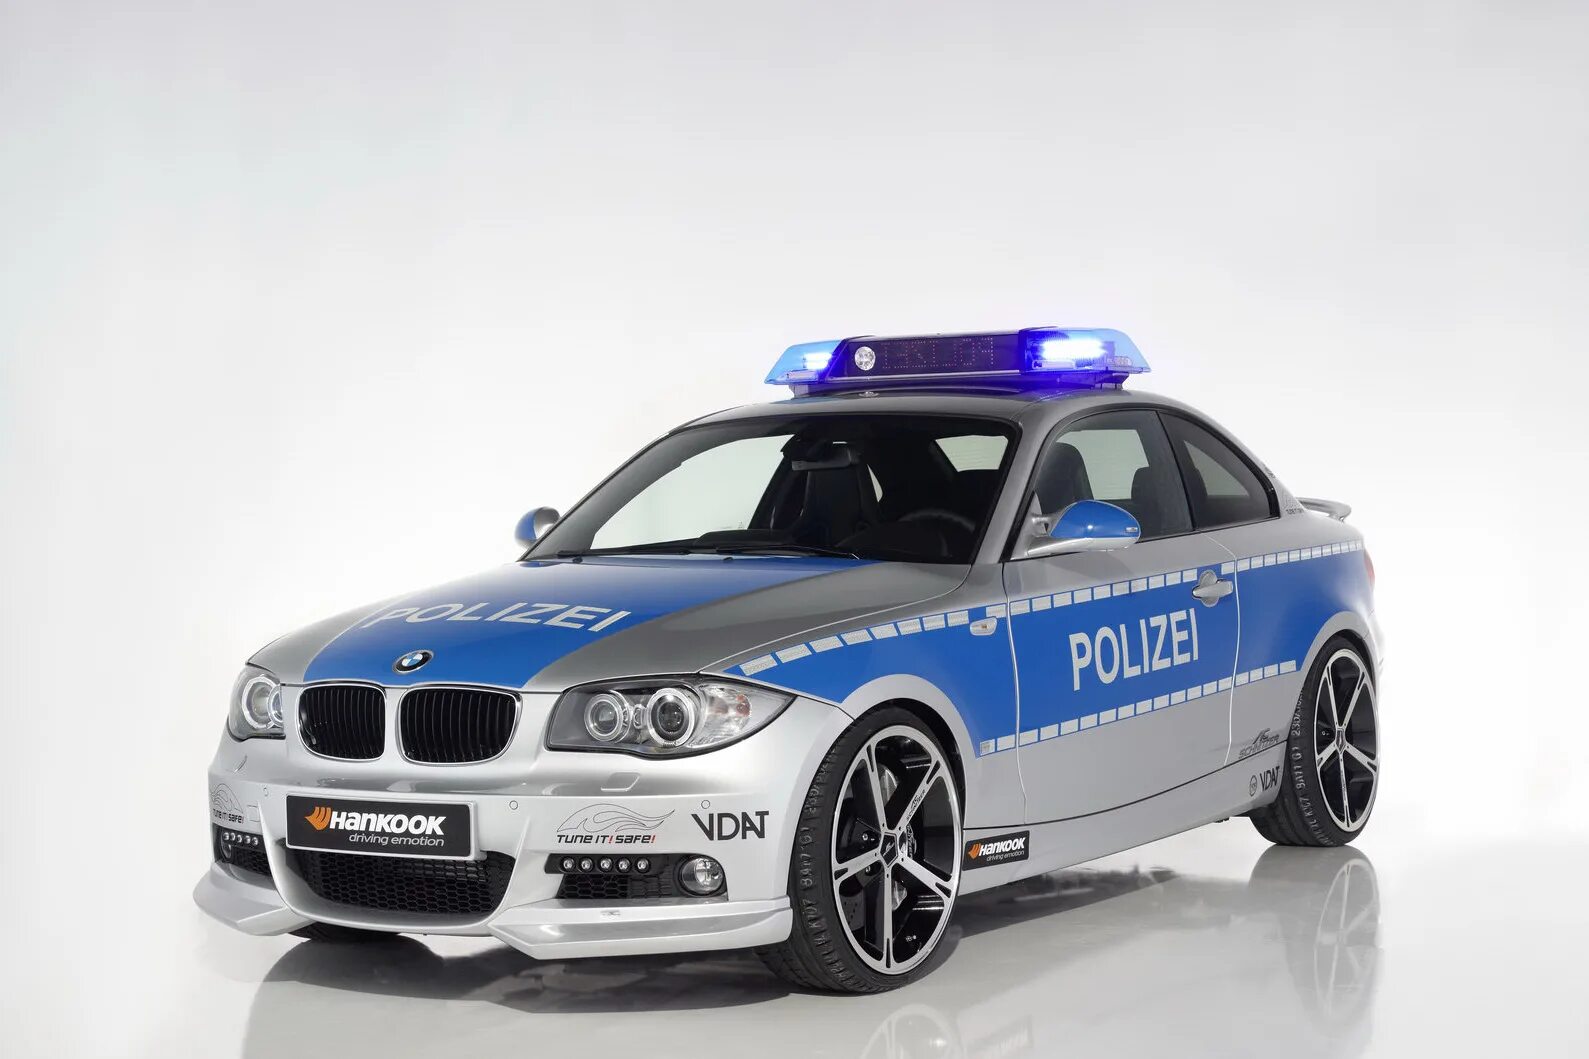 Картинка полиция машина. BMW e39 Polizei. BMW x6 Polizei. БМВ 3 полиция. Автомобиль БМВ 3 полицейский.